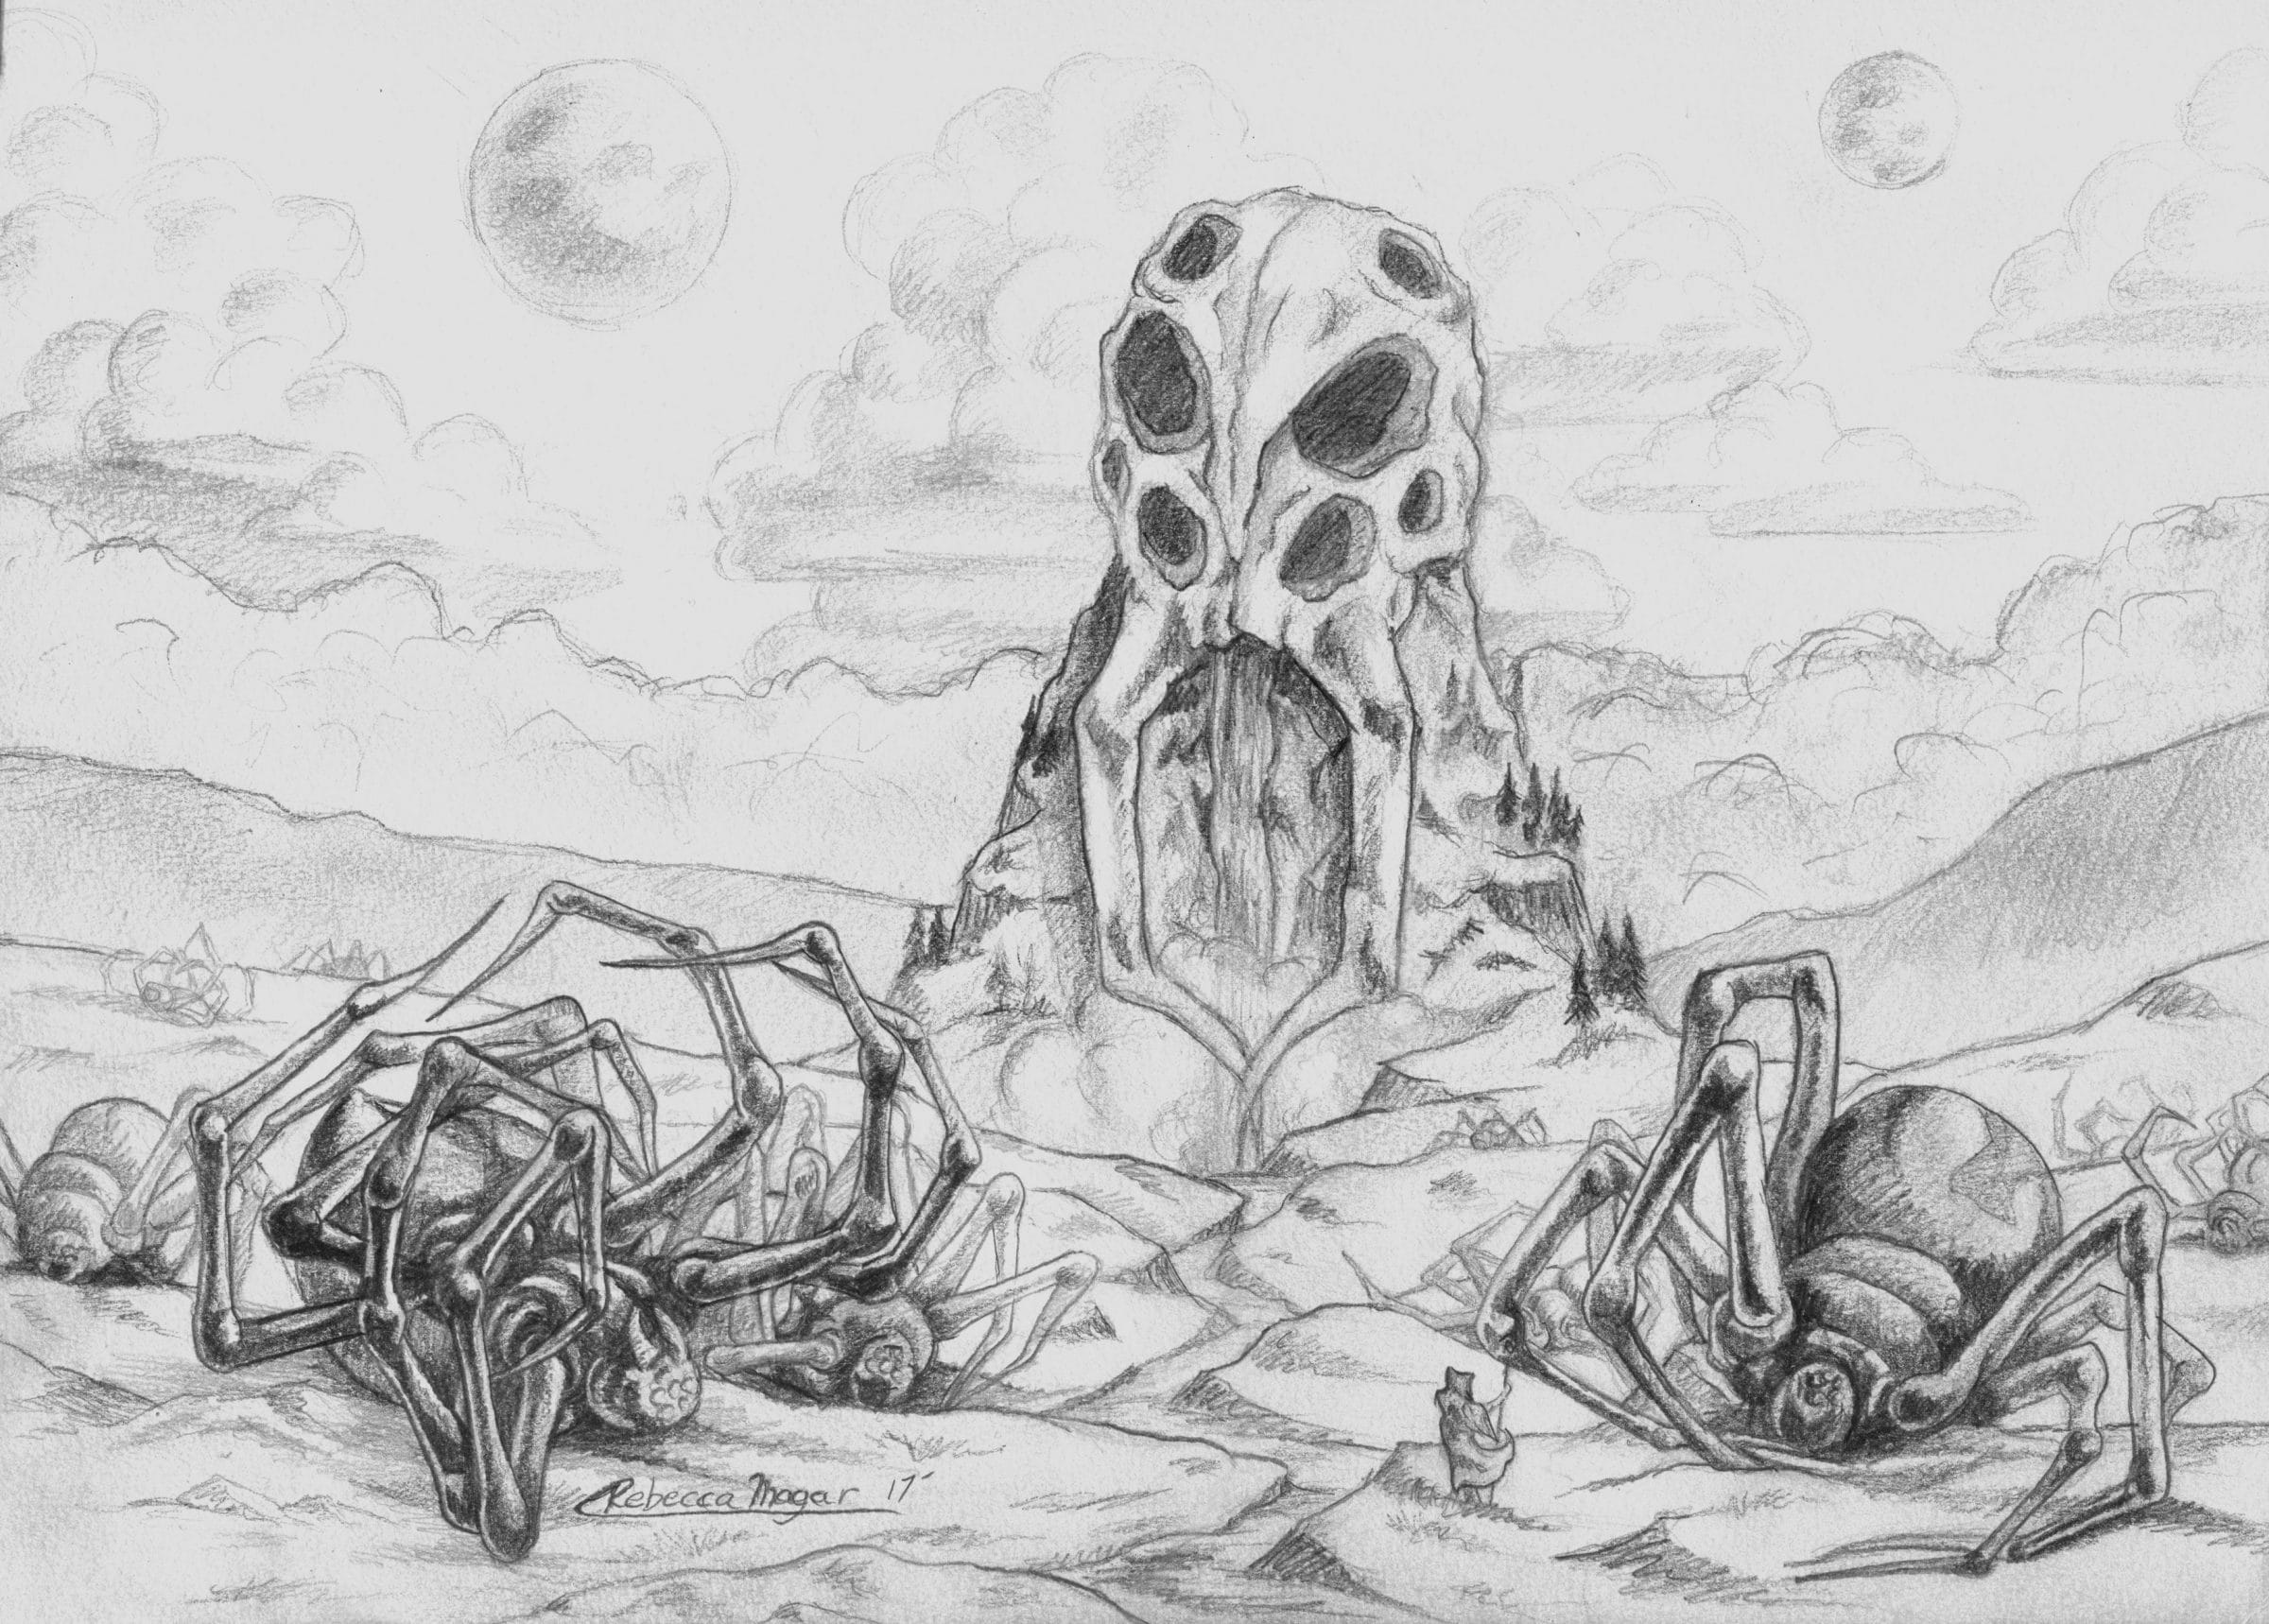 Black Widow Spider Wasteland Sketch by Rebecca Magar